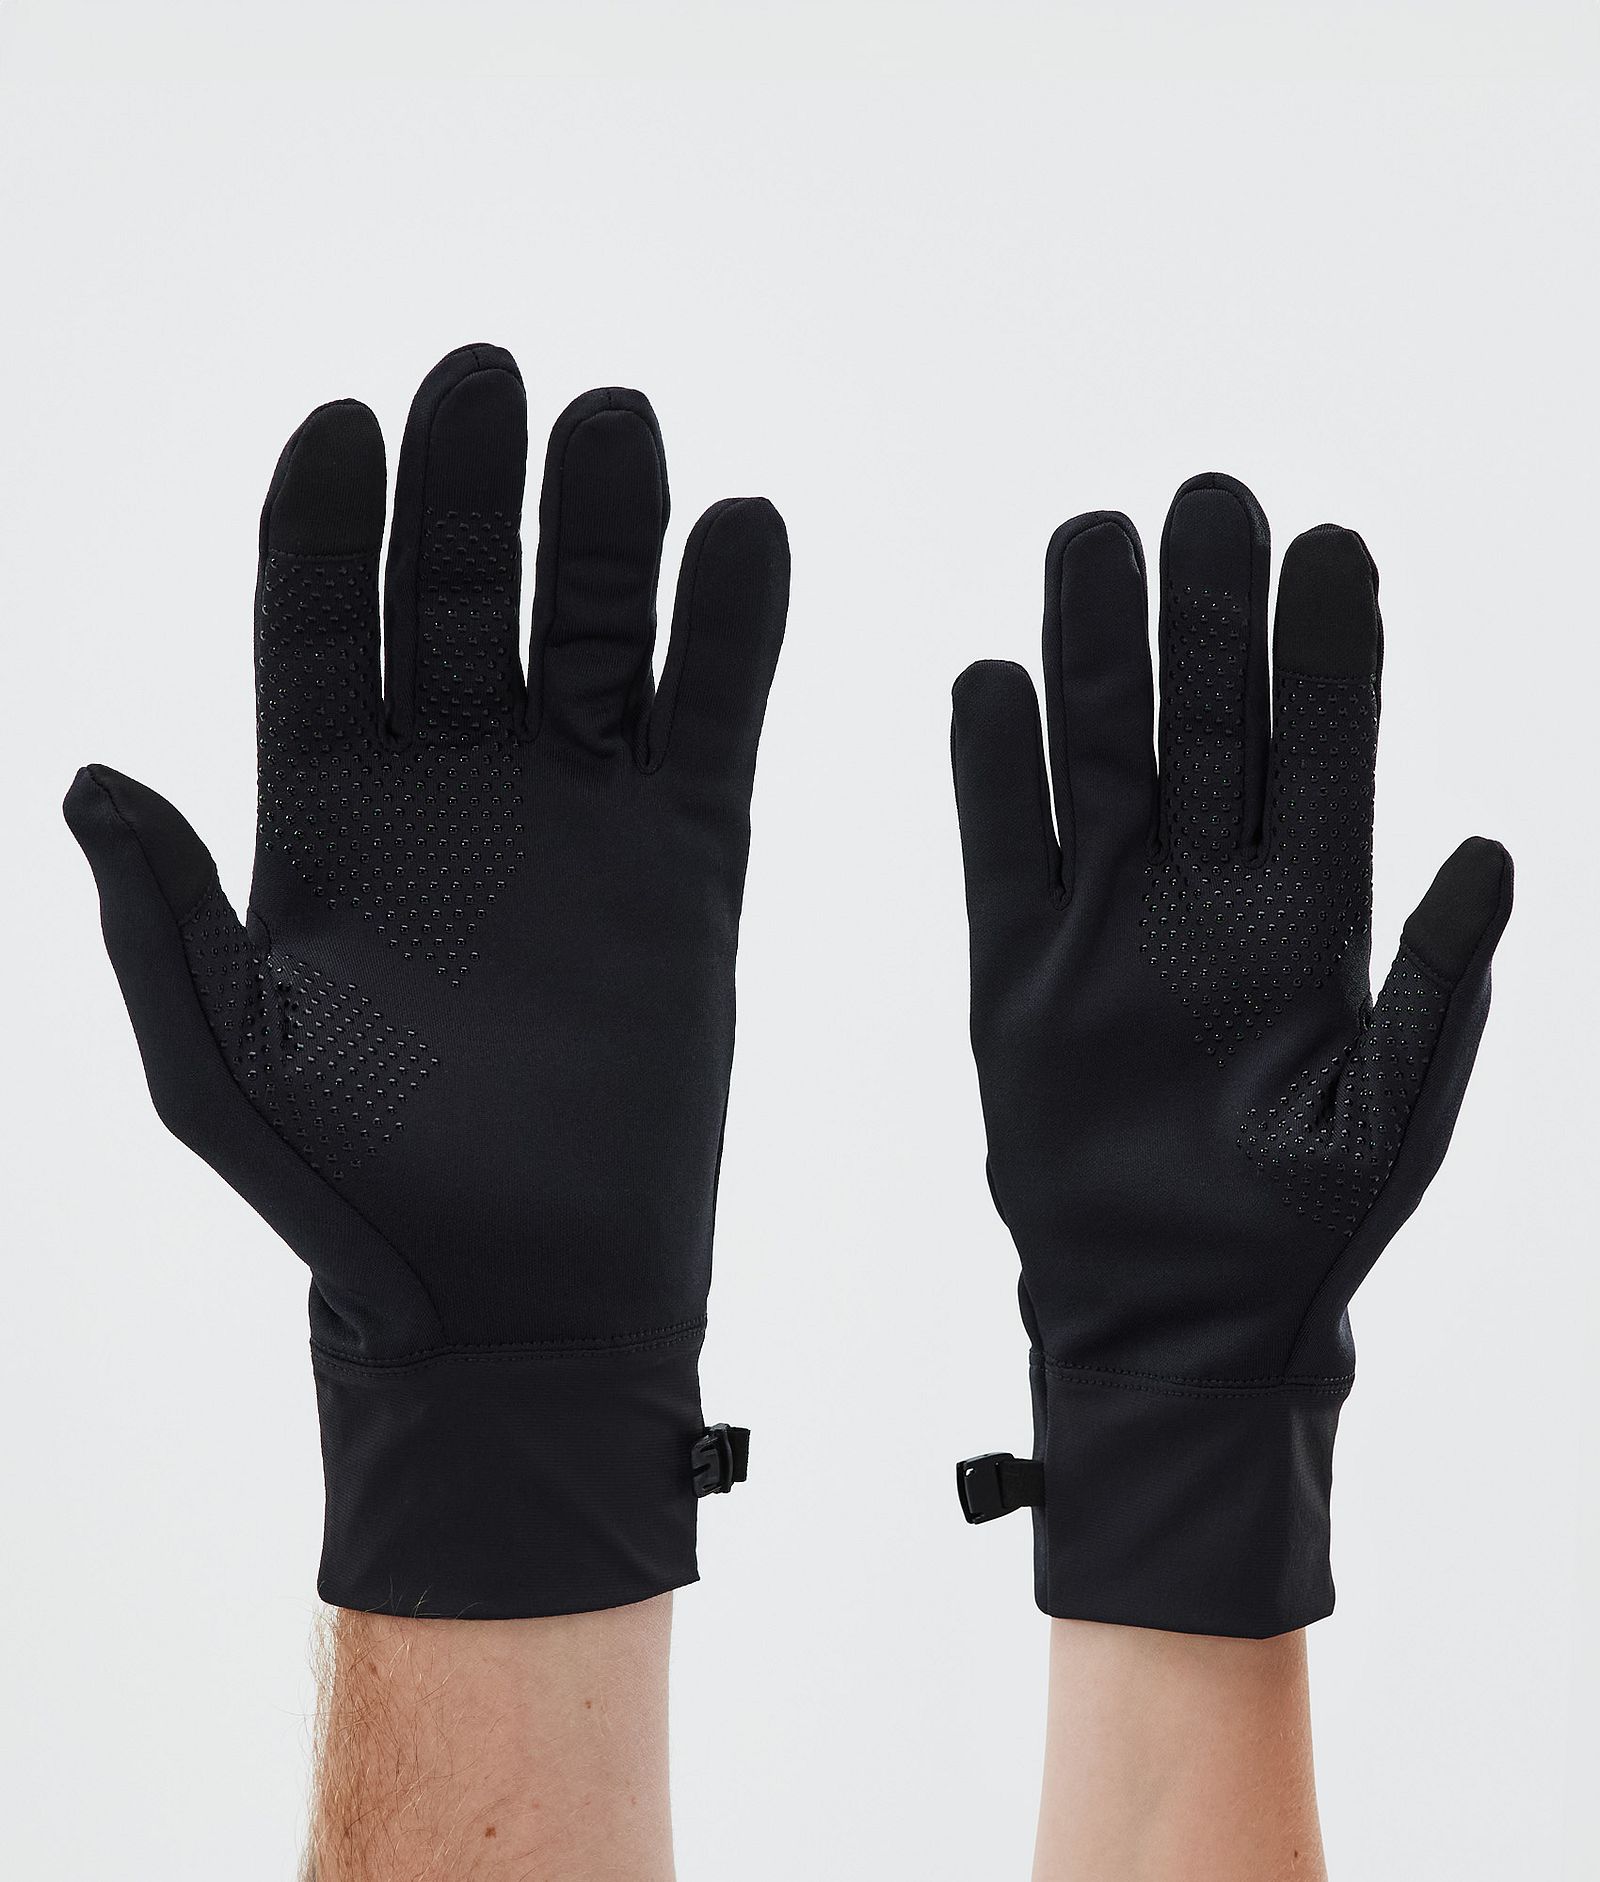 Utility Ski Gloves Black/Black, Image 2 of 4